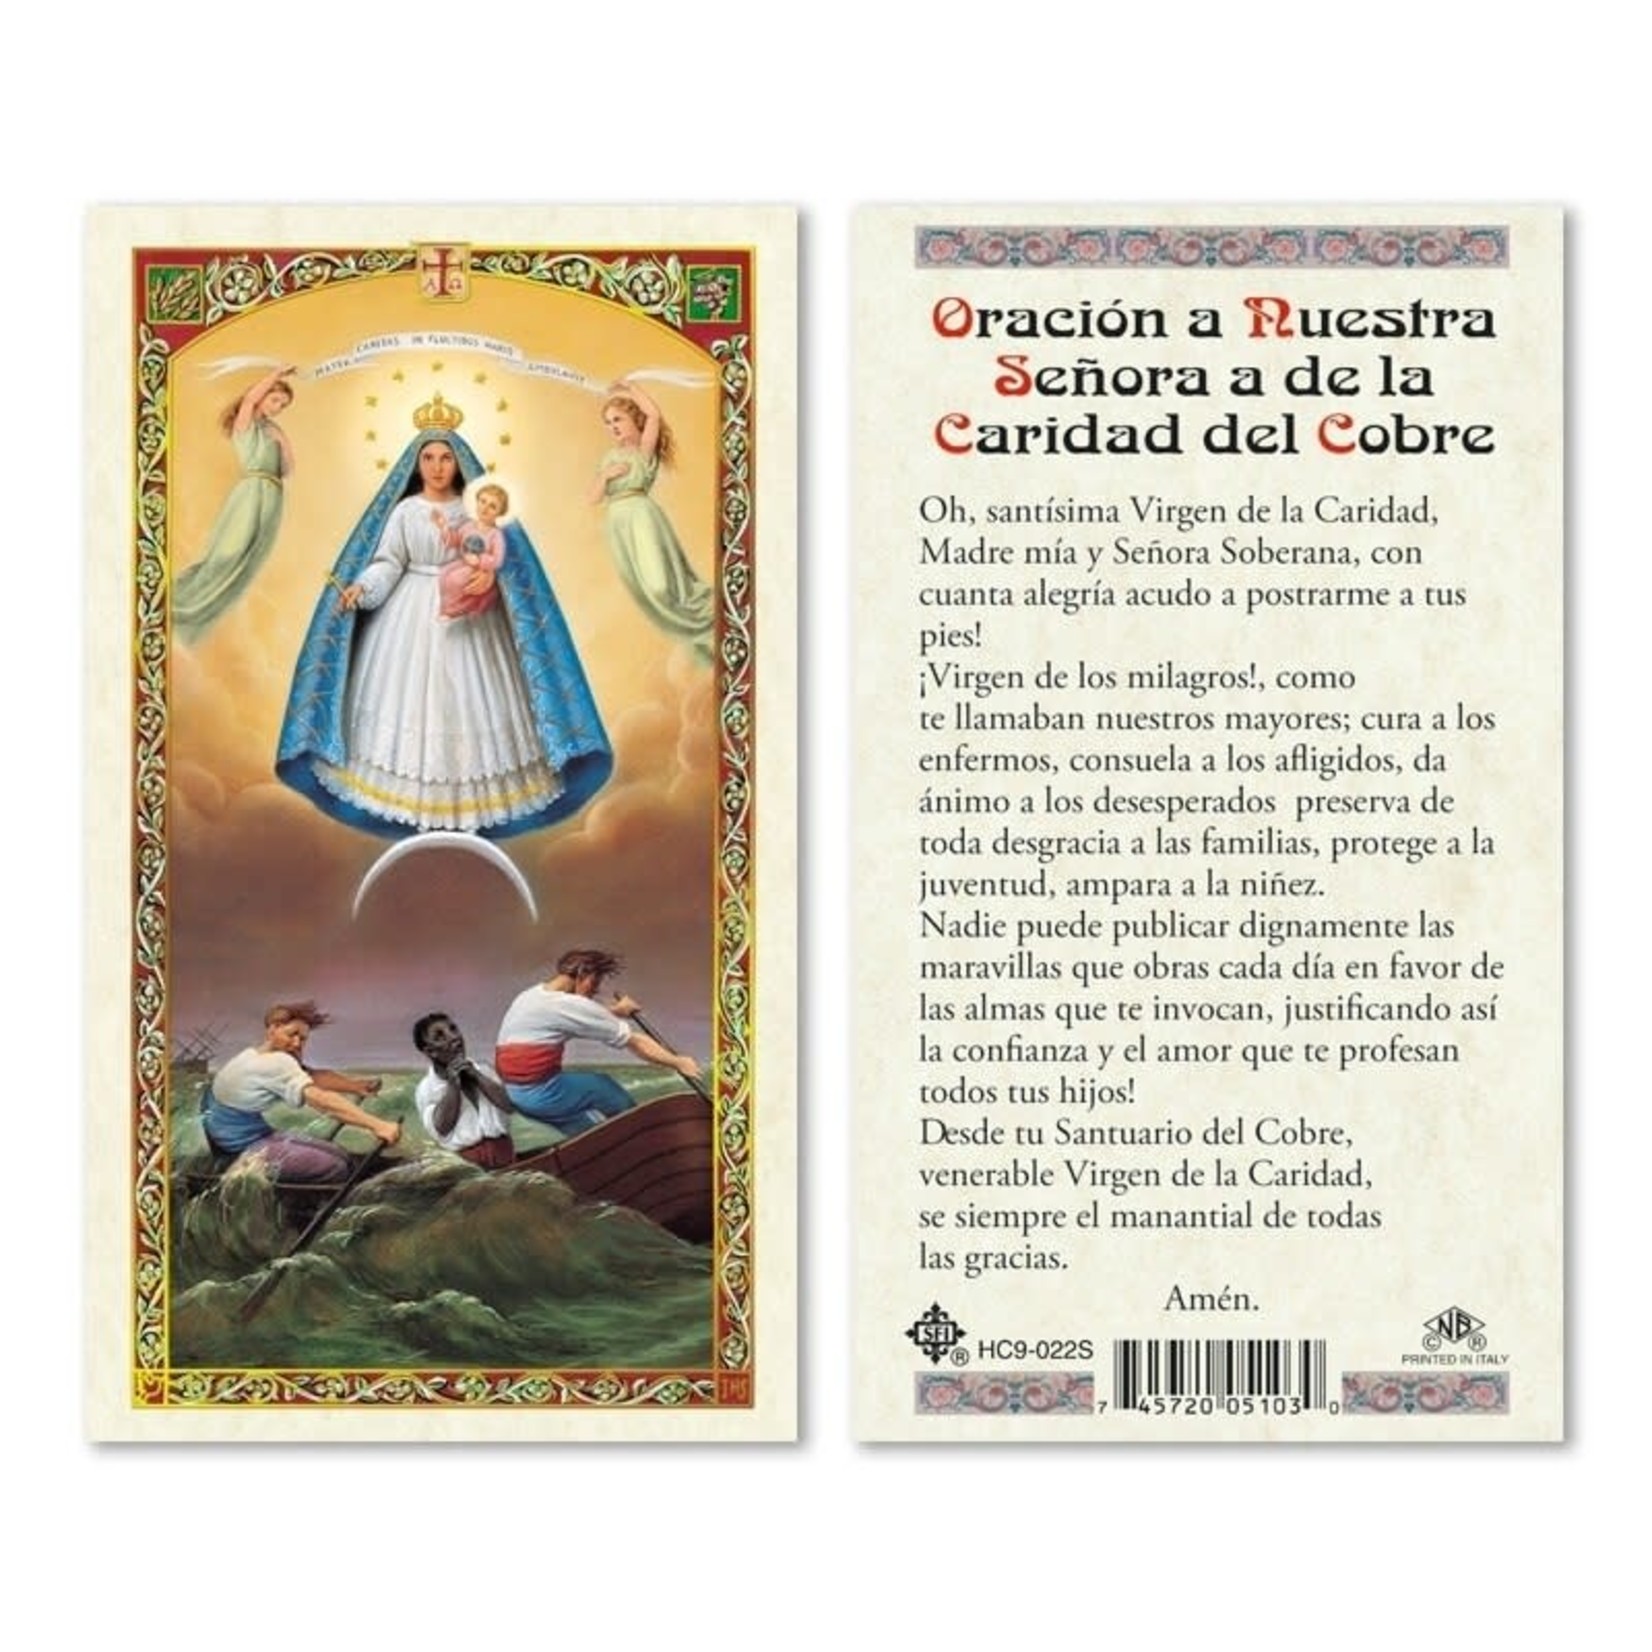 Nuestra Señora de la Caridad del Cobre Prayer Card (Spanish)